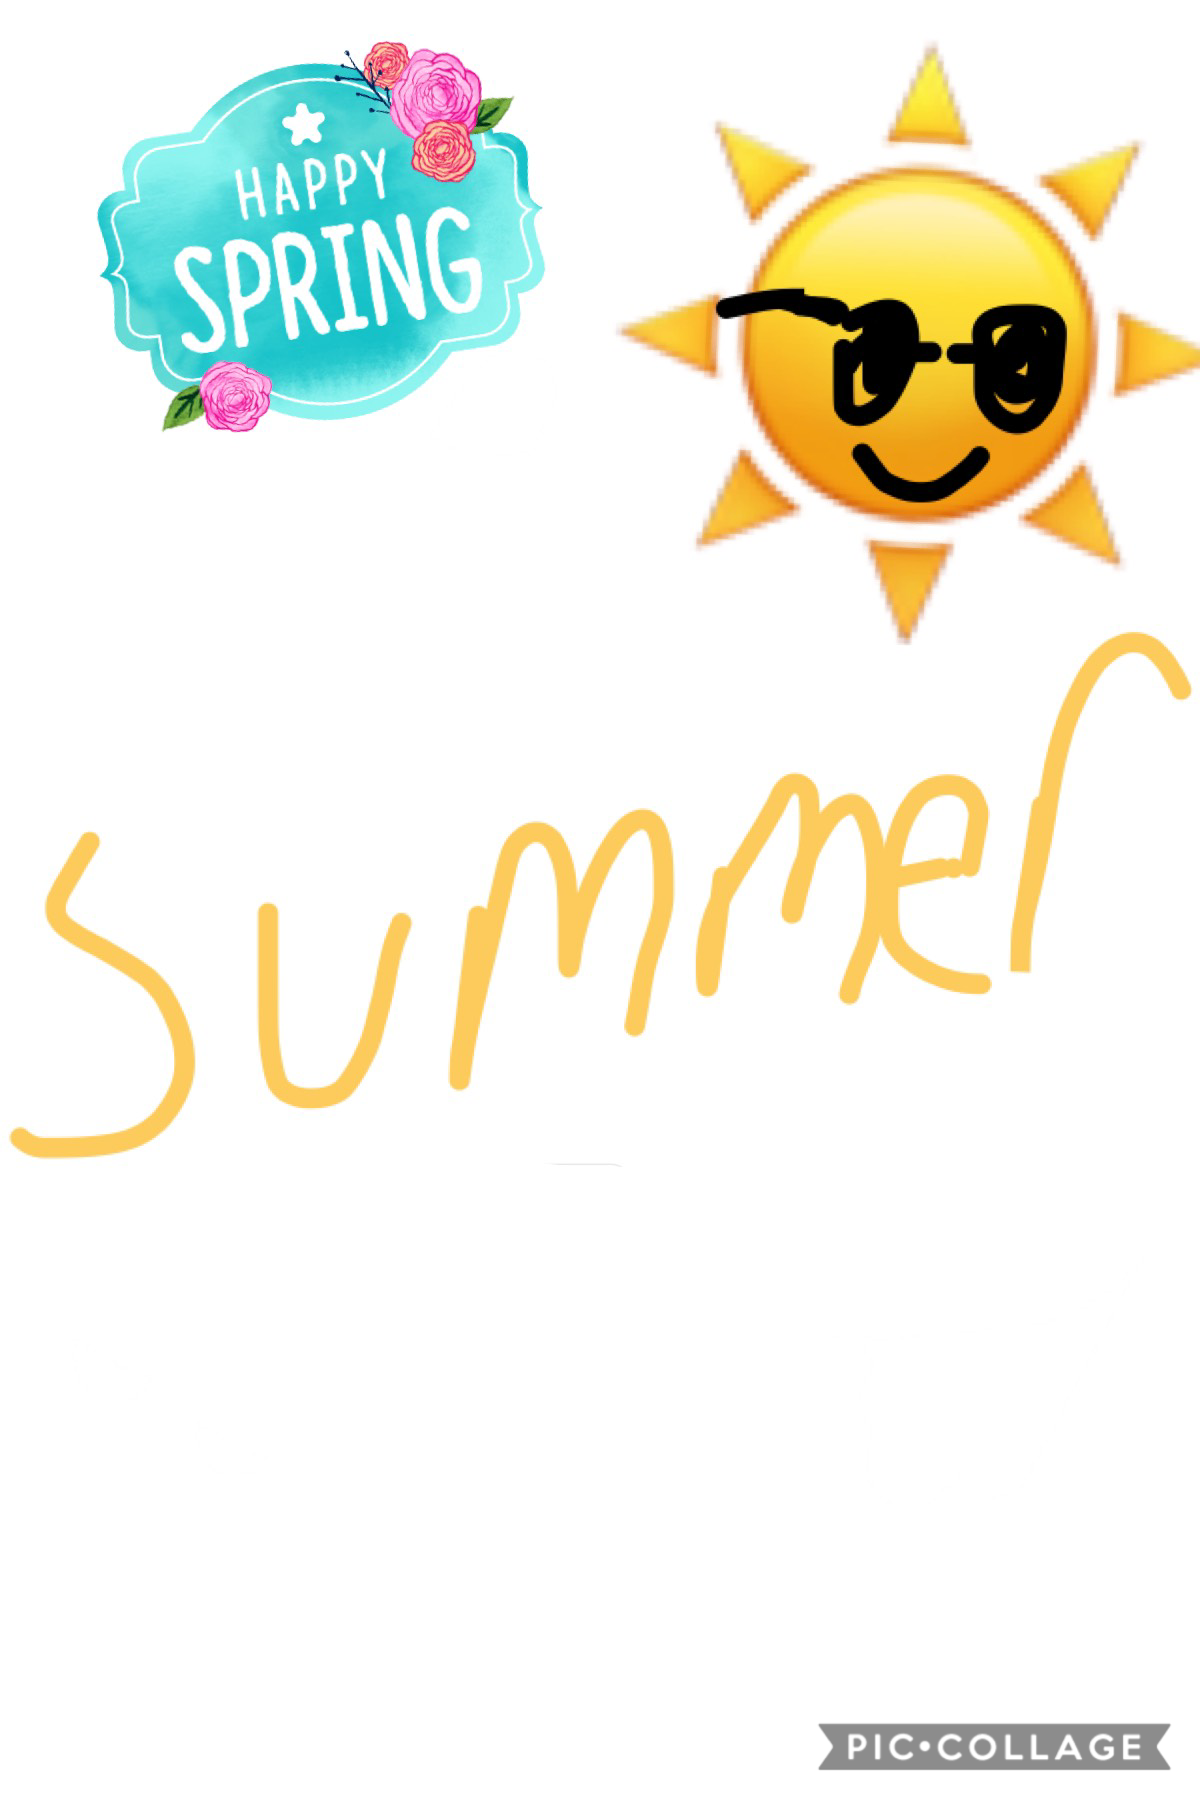 Summer!!!
